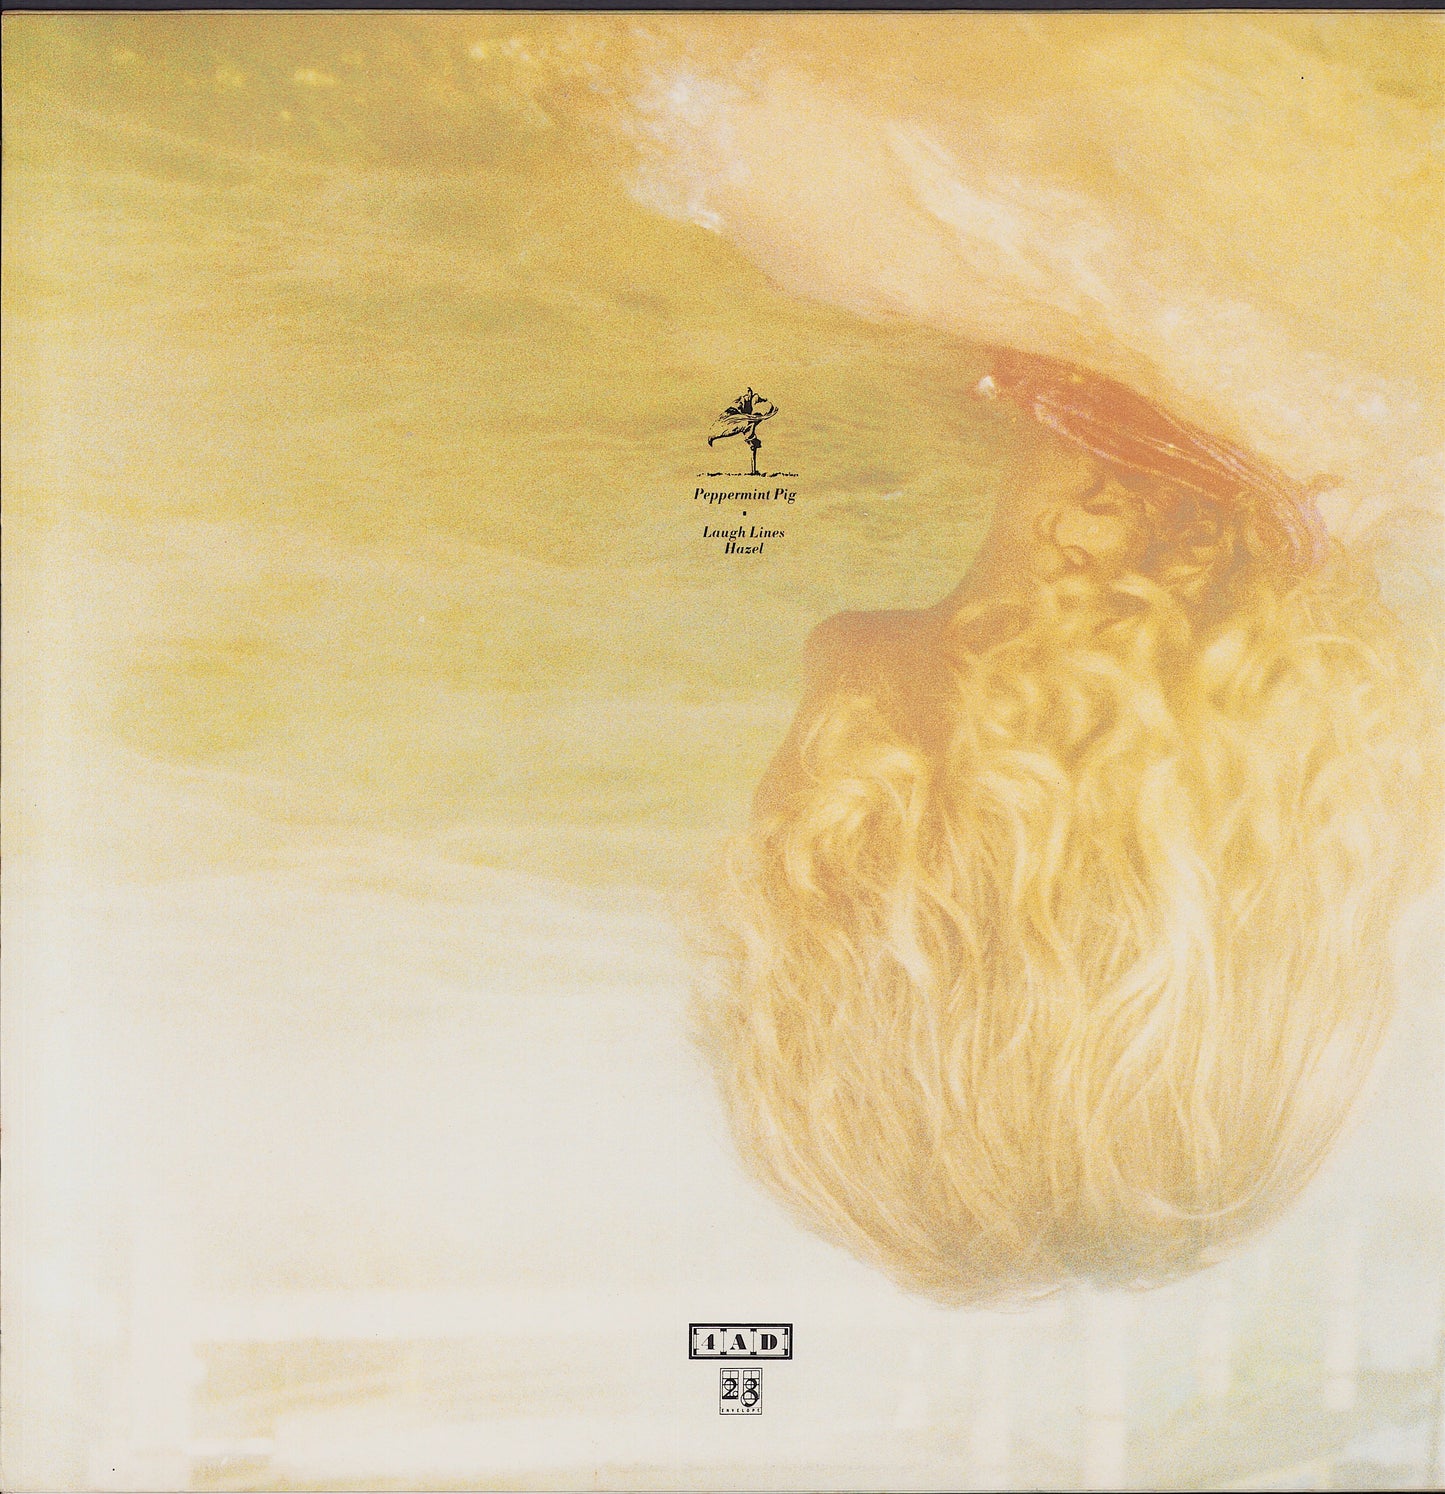 Cocteau Twins ‎- Peppermint Pig Vinyl 12" EP